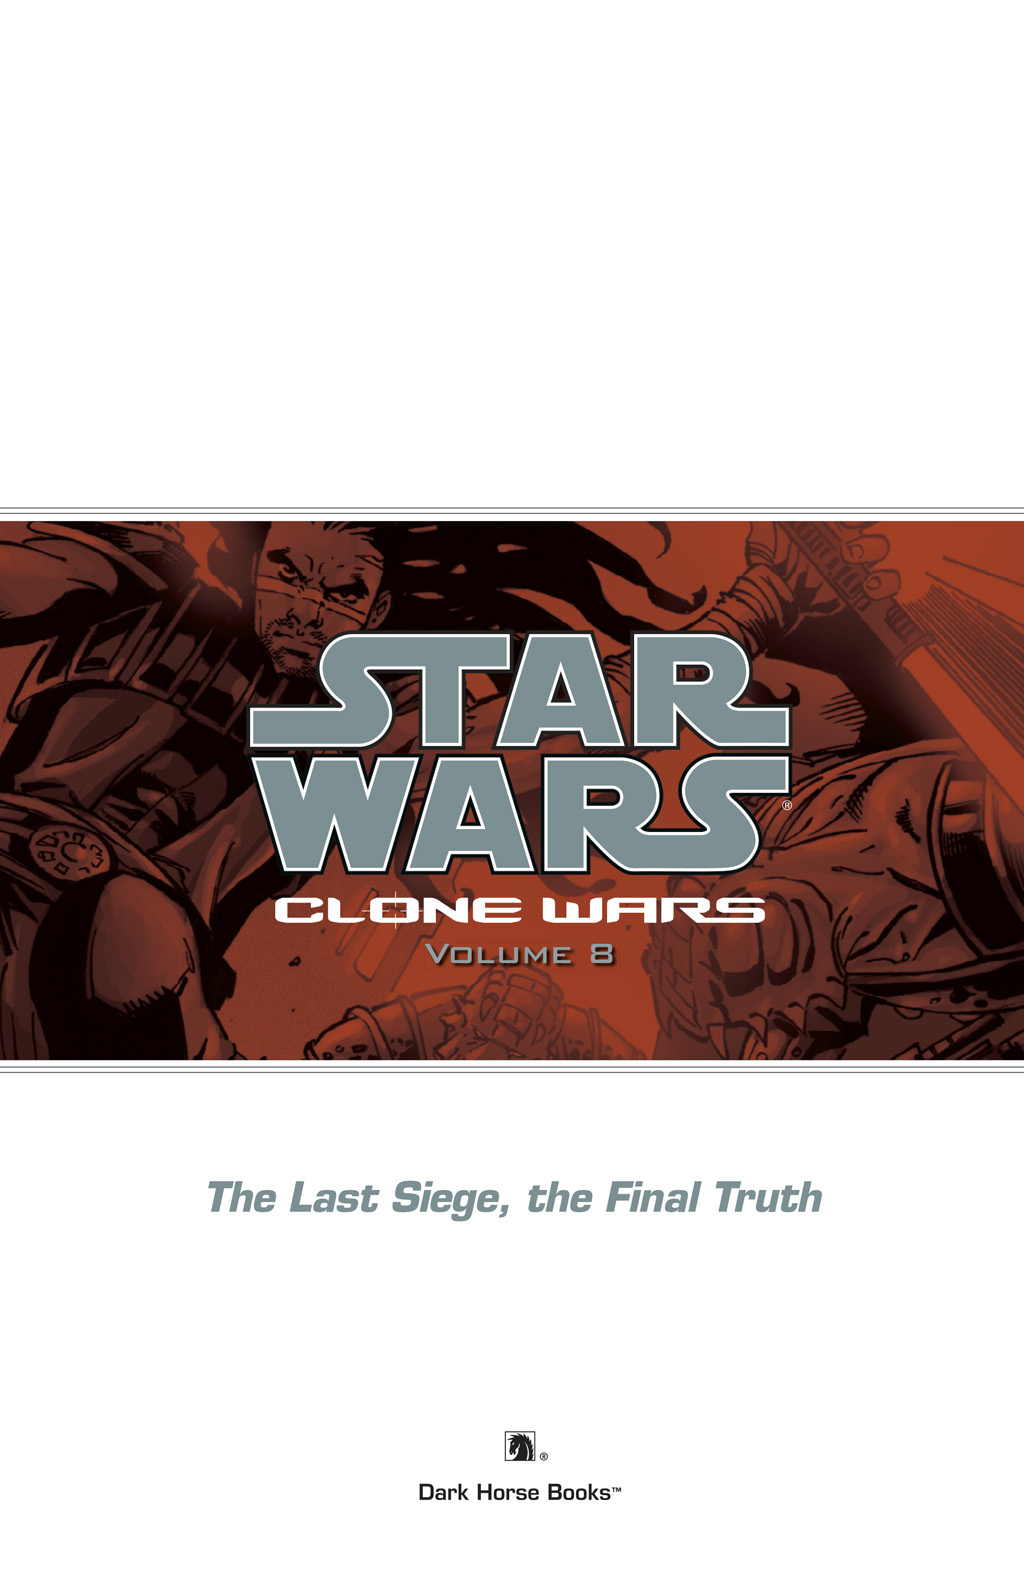 Read online Star Wars: Clone Wars comic -  Issue # TPB 8 - 4